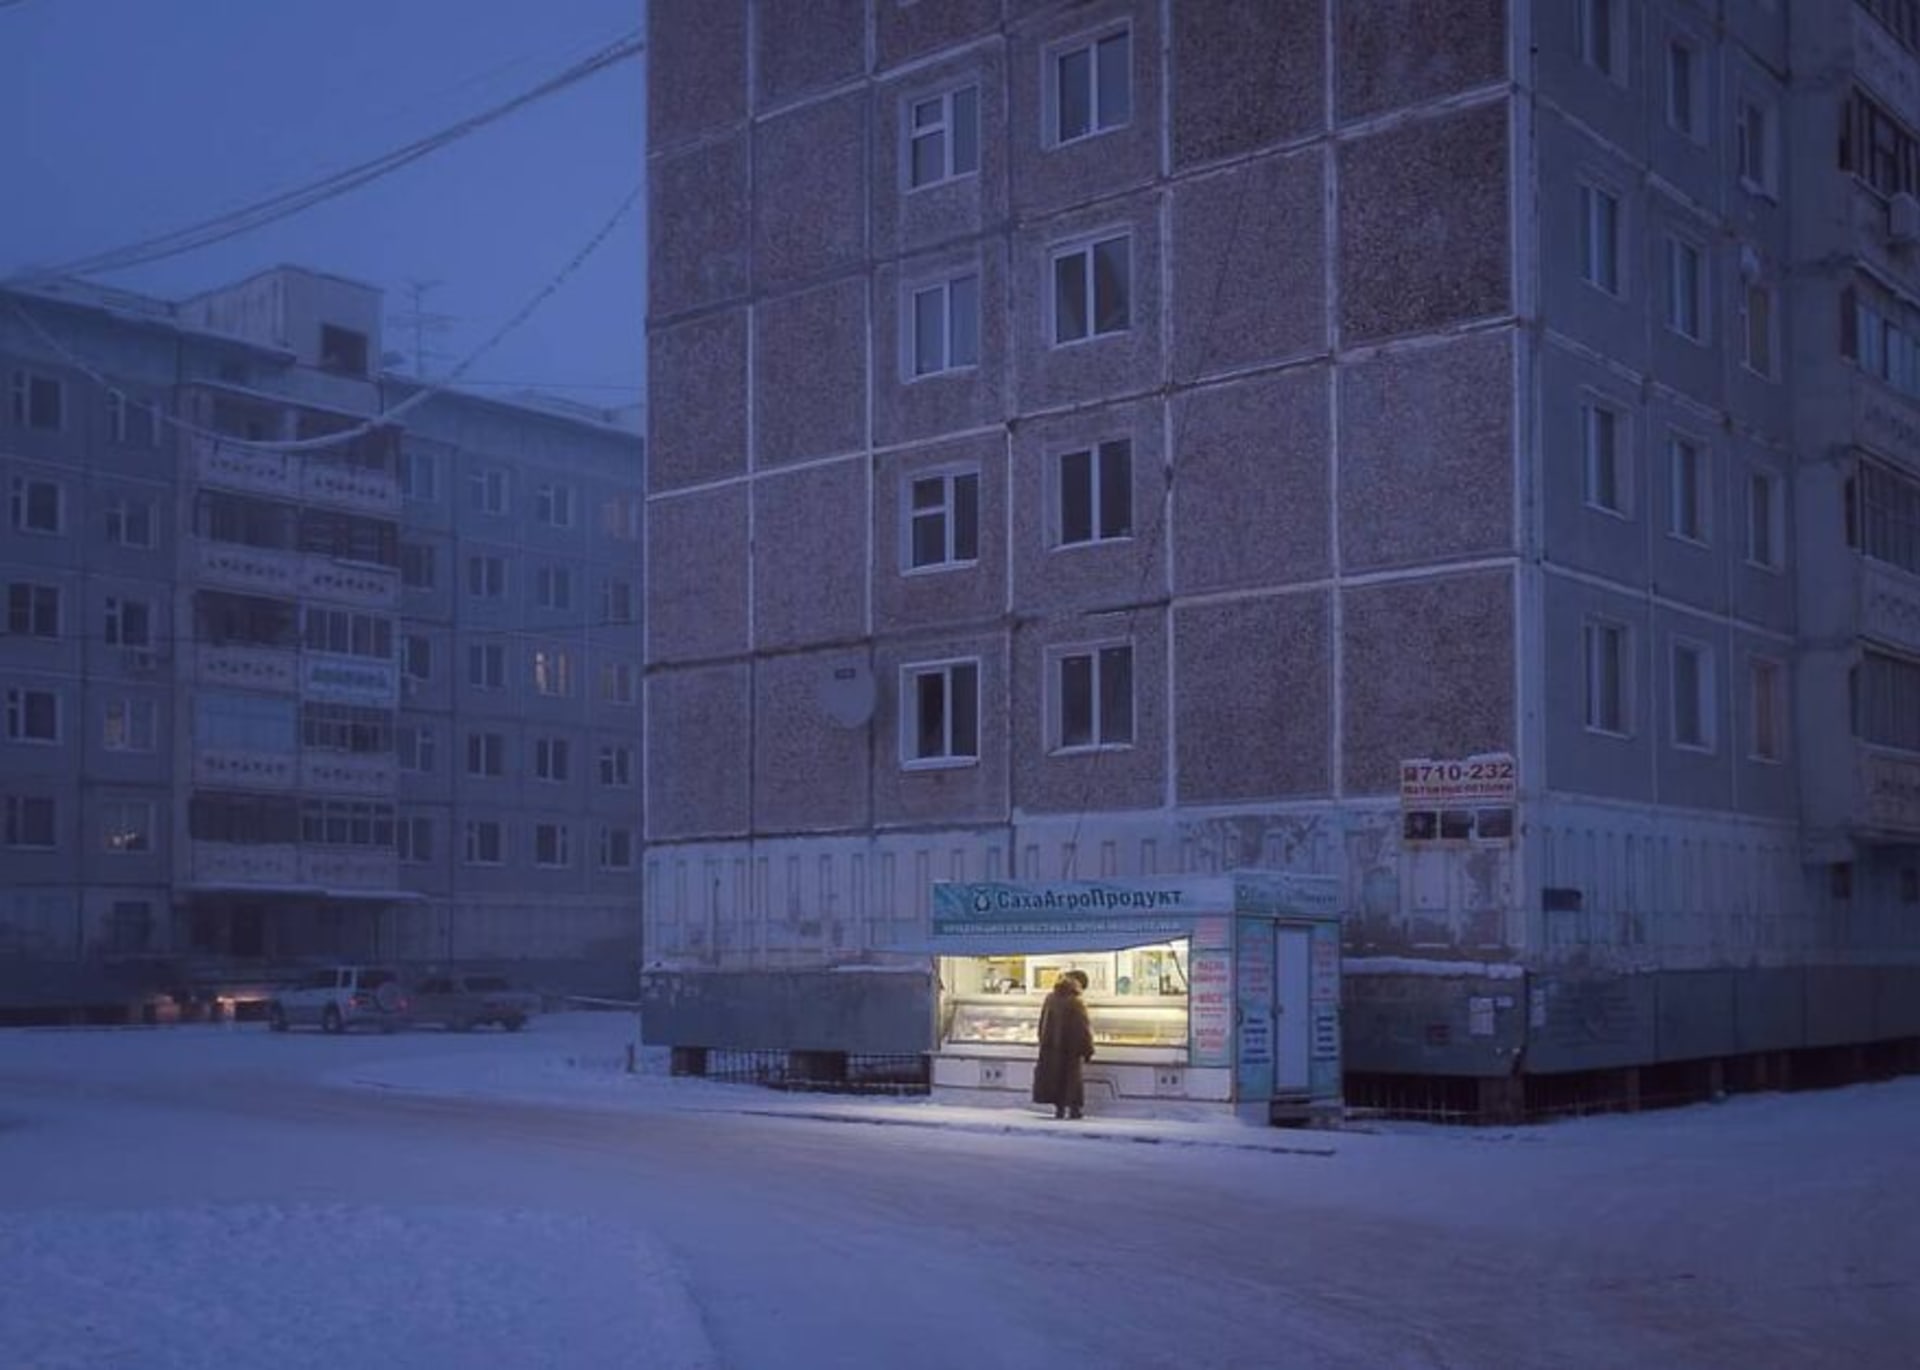 Domy v Jakutsku většinou stojí „na nohách“, aby teplo domu nerozpustilo permafrost, na kterém stojí